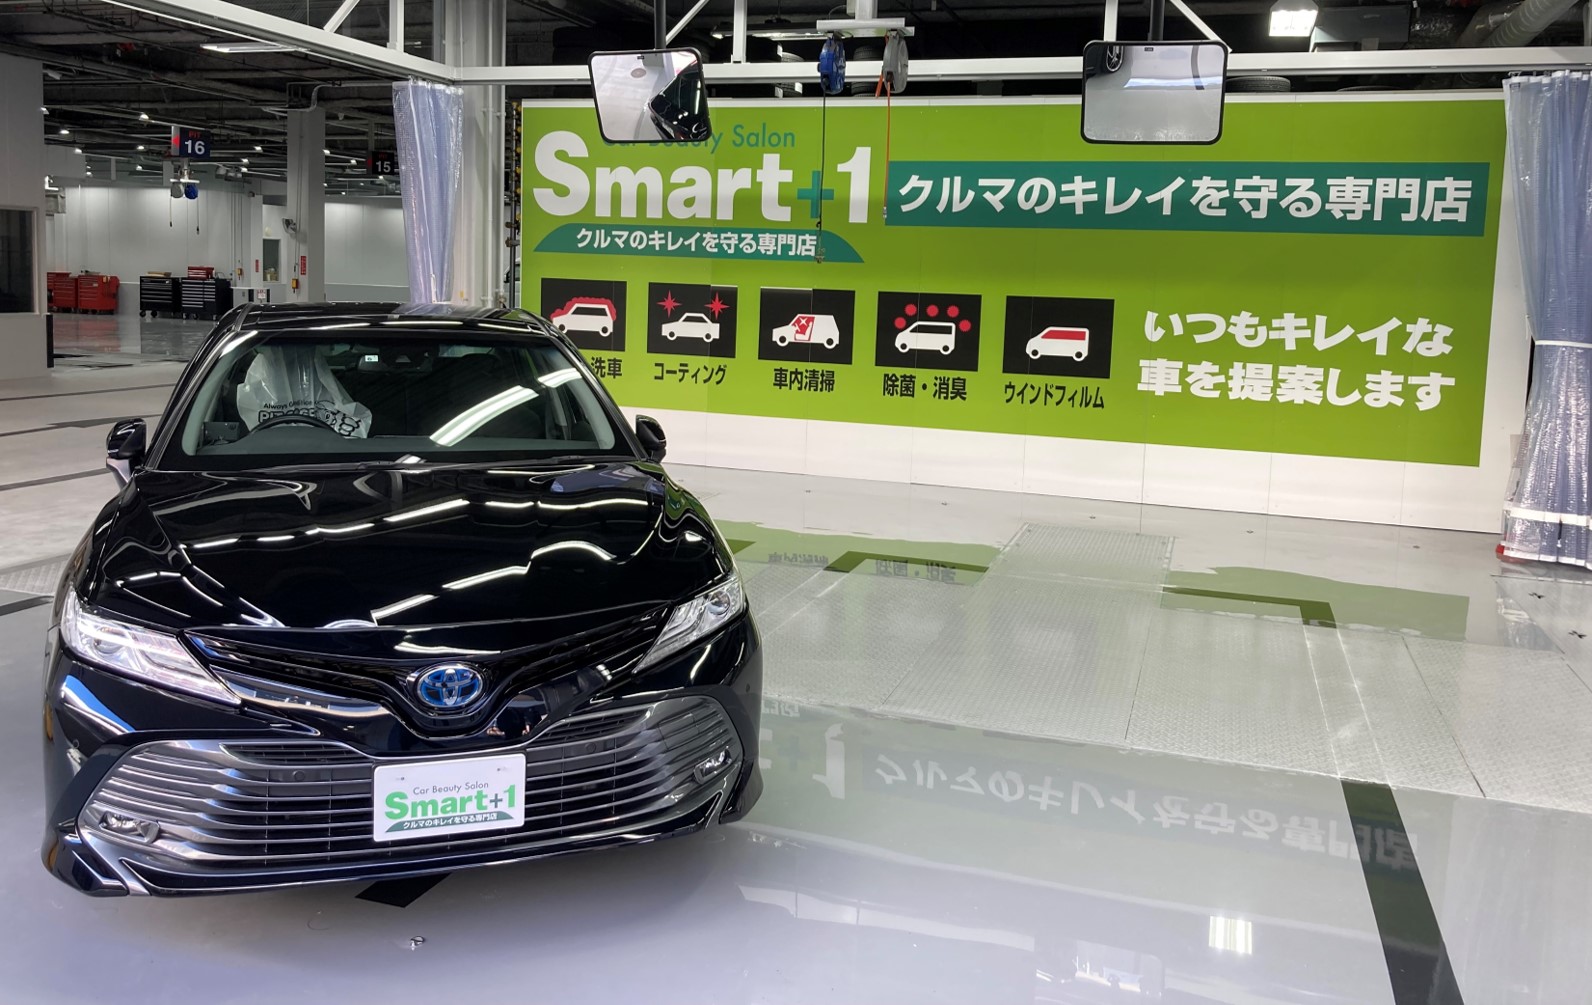 Car Beauty Salon Smart 1 市川 新規オープン ニュース 株式会社オートバックスセブン